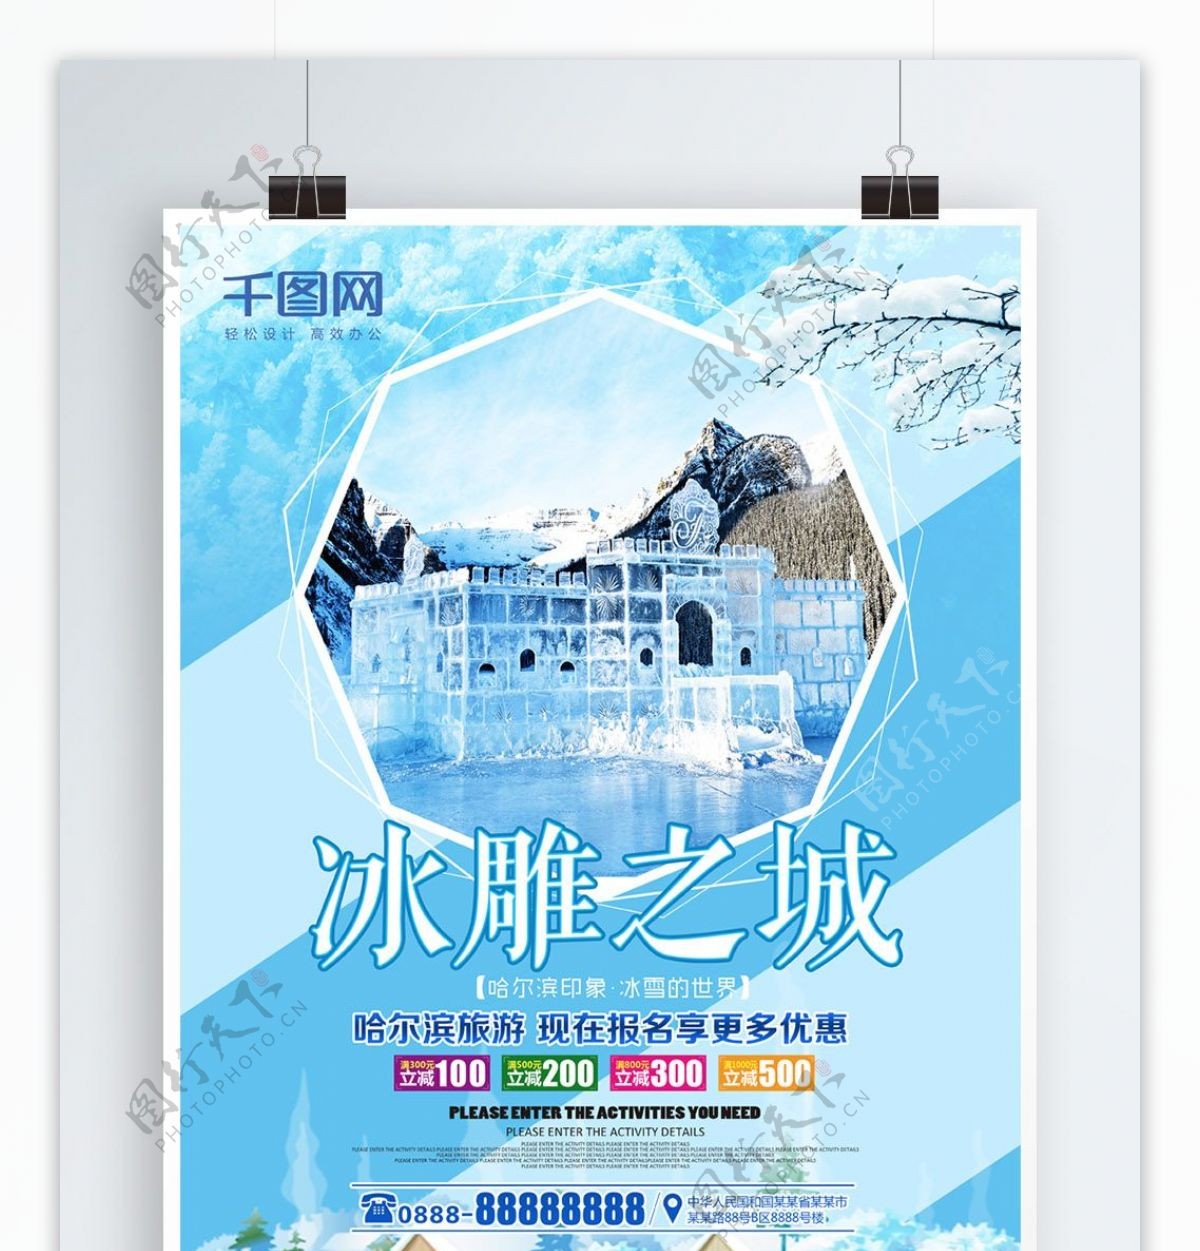 哈尔滨冰雕之城旅游海报